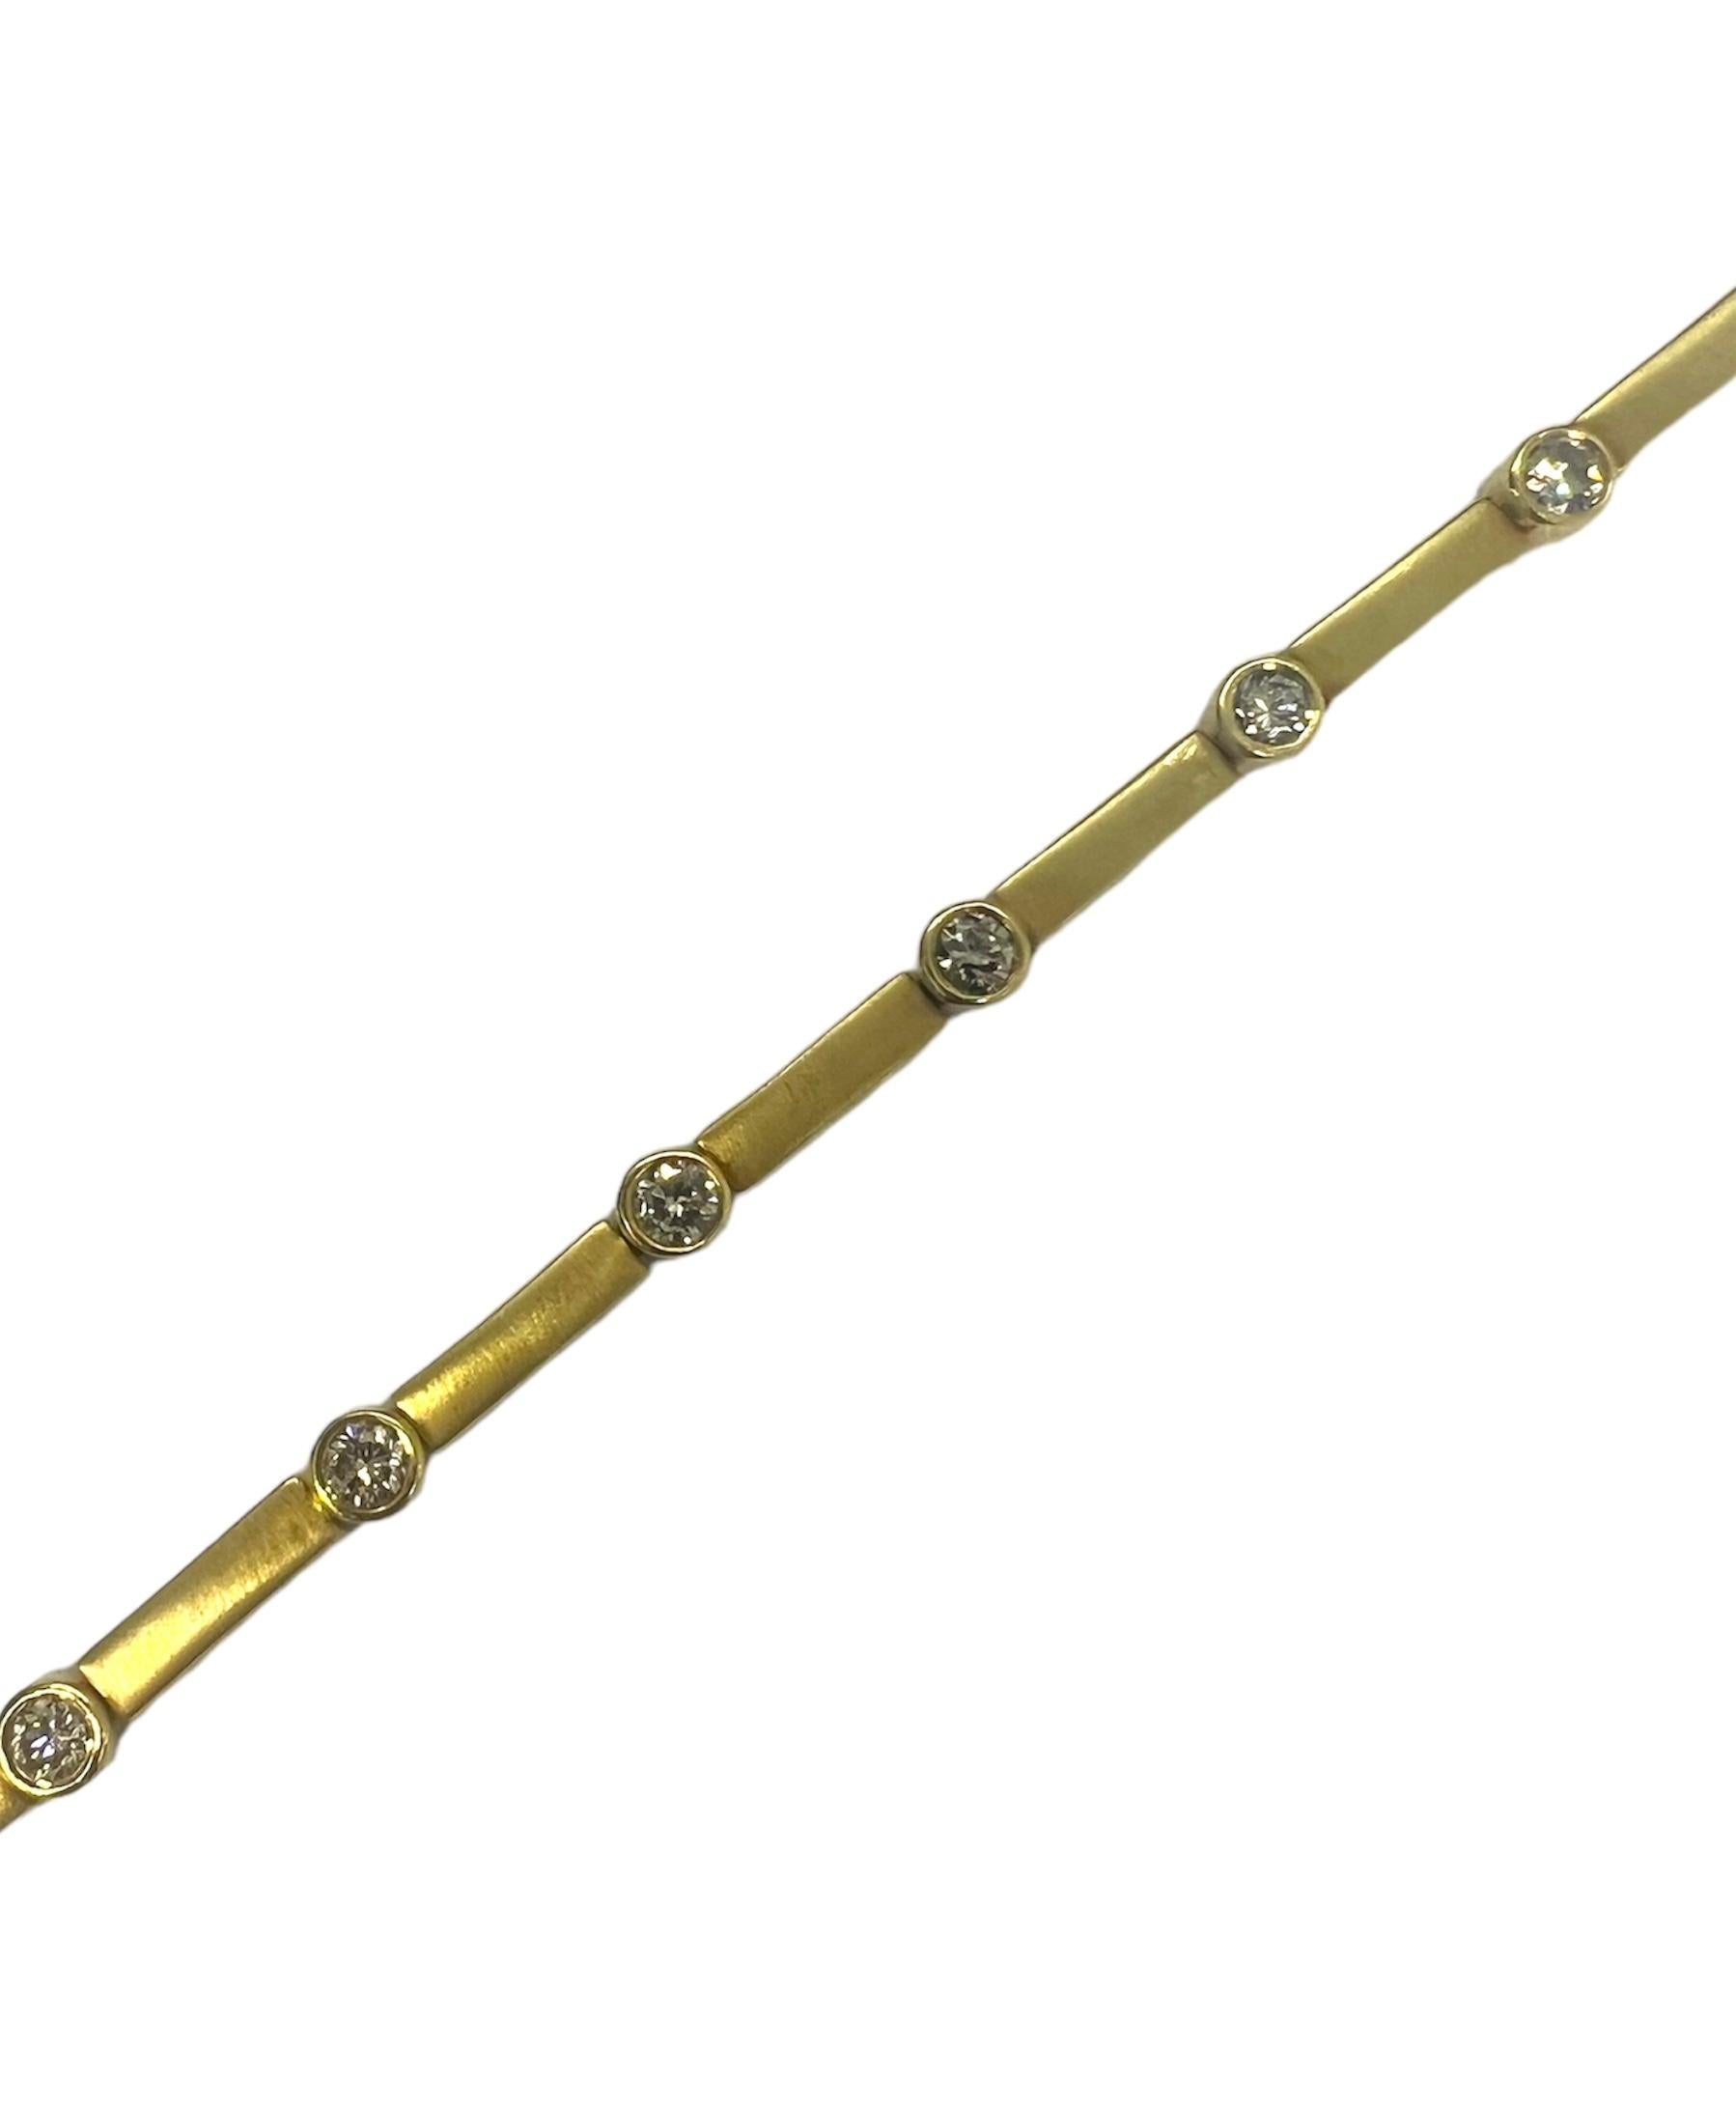 Bracelet en or jaune 14K avec des diamants ronds.

Sophia D by Joseph Dardashti Ltd est connue dans le monde entier depuis 35 ans et s'inspire du design classique de l'Art déco qui fusionne avec les techniques de fabrication modernes.
